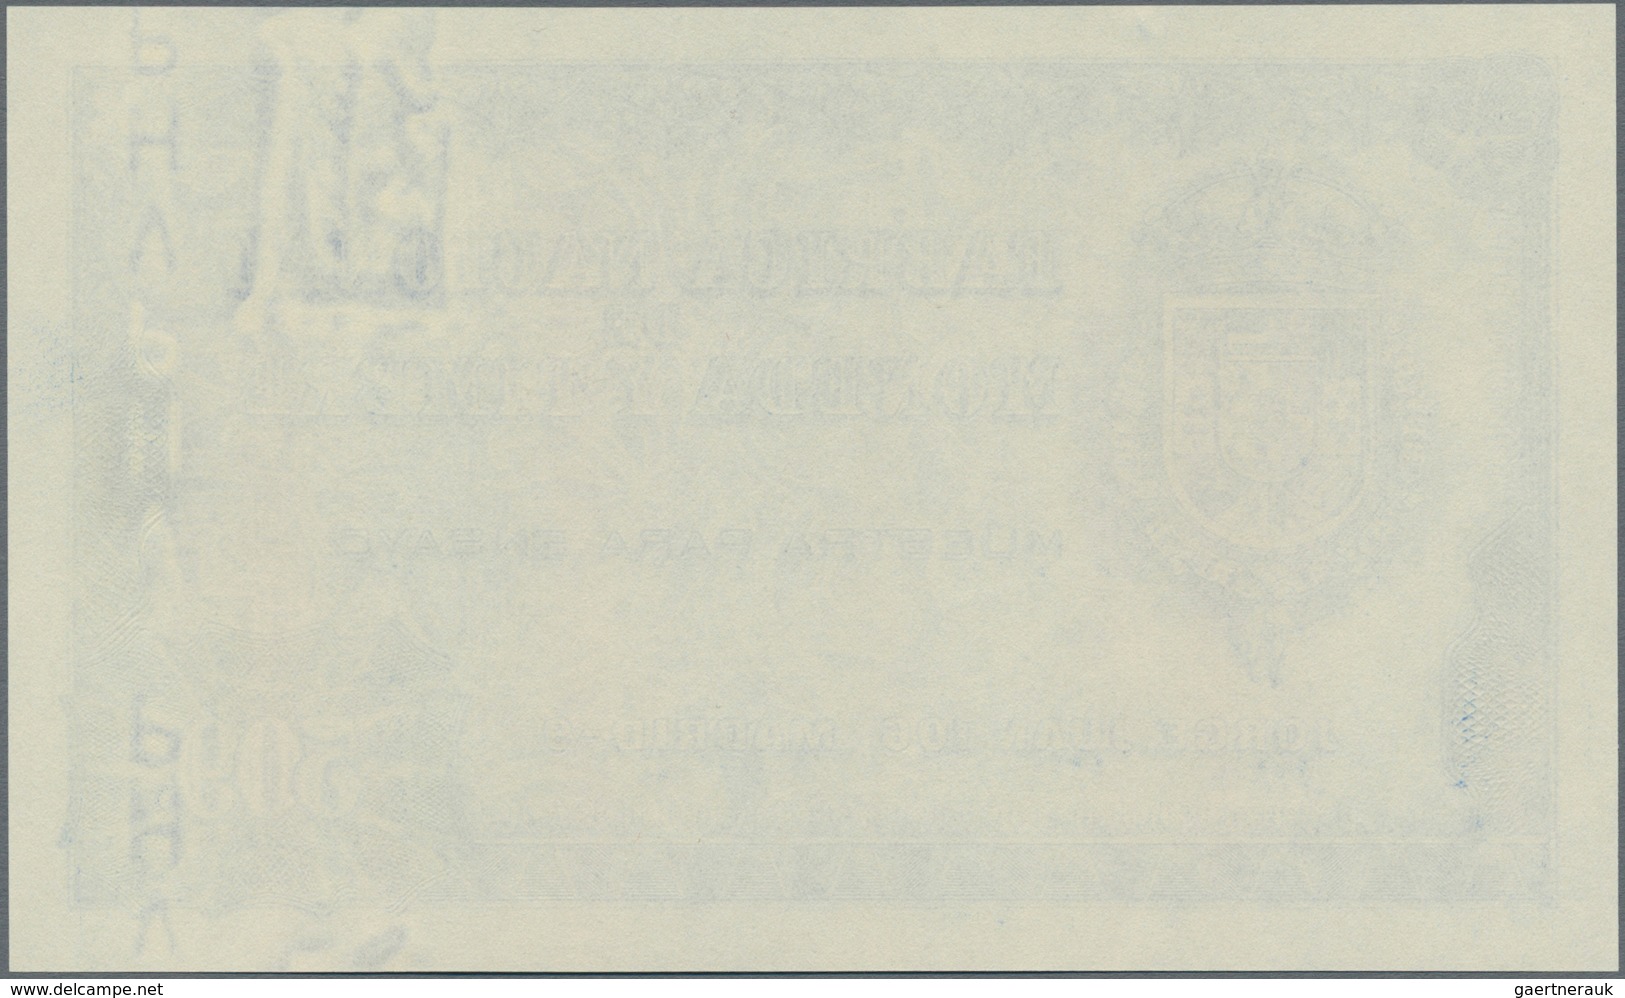 Testbanknoten: Fabricia Nacional De Moneda Y Timbre Uniface Intaglio Printed Test Note "509" In Blue - Ficción & Especímenes